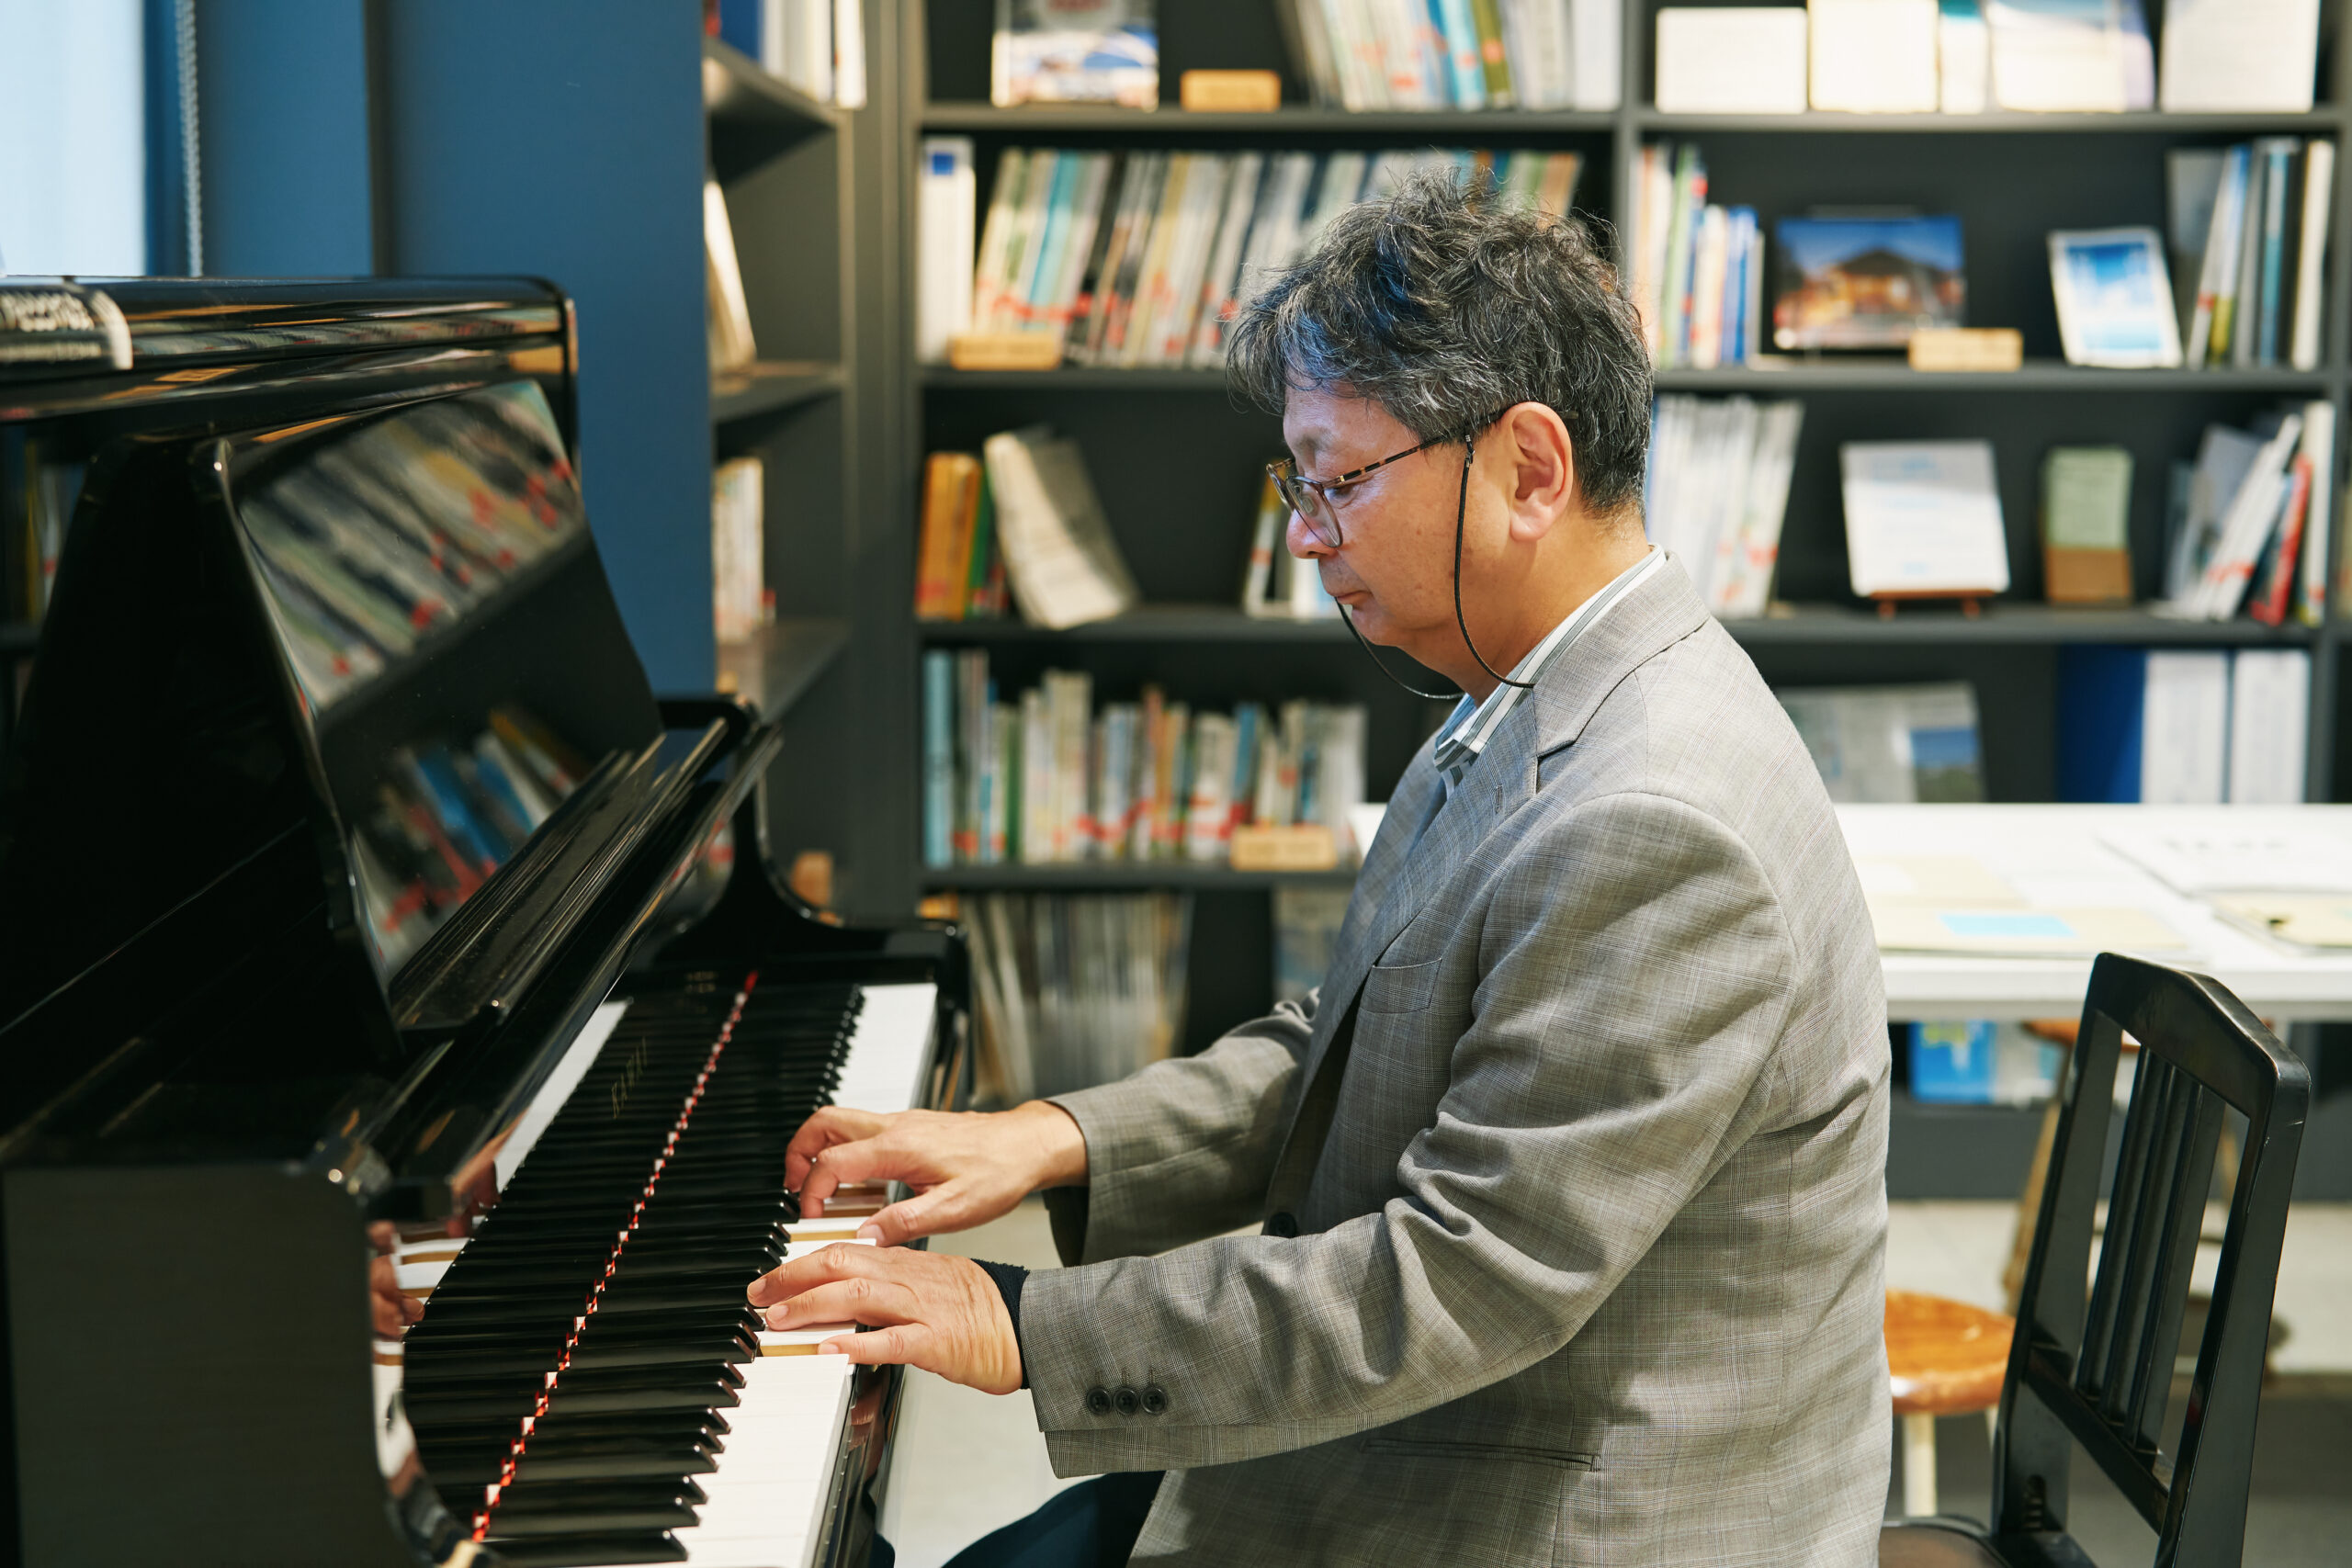 「ピアノが移されたことで、このメモリアル交流館とご縁ができました」と吉川さん。2020年2月にはこのピアノを使って、「とどける会」のメンバーと復興支援のミニコンサートも行った。吉川さんにもピアノを弾いていただくと、優しい音色が響き渡った。